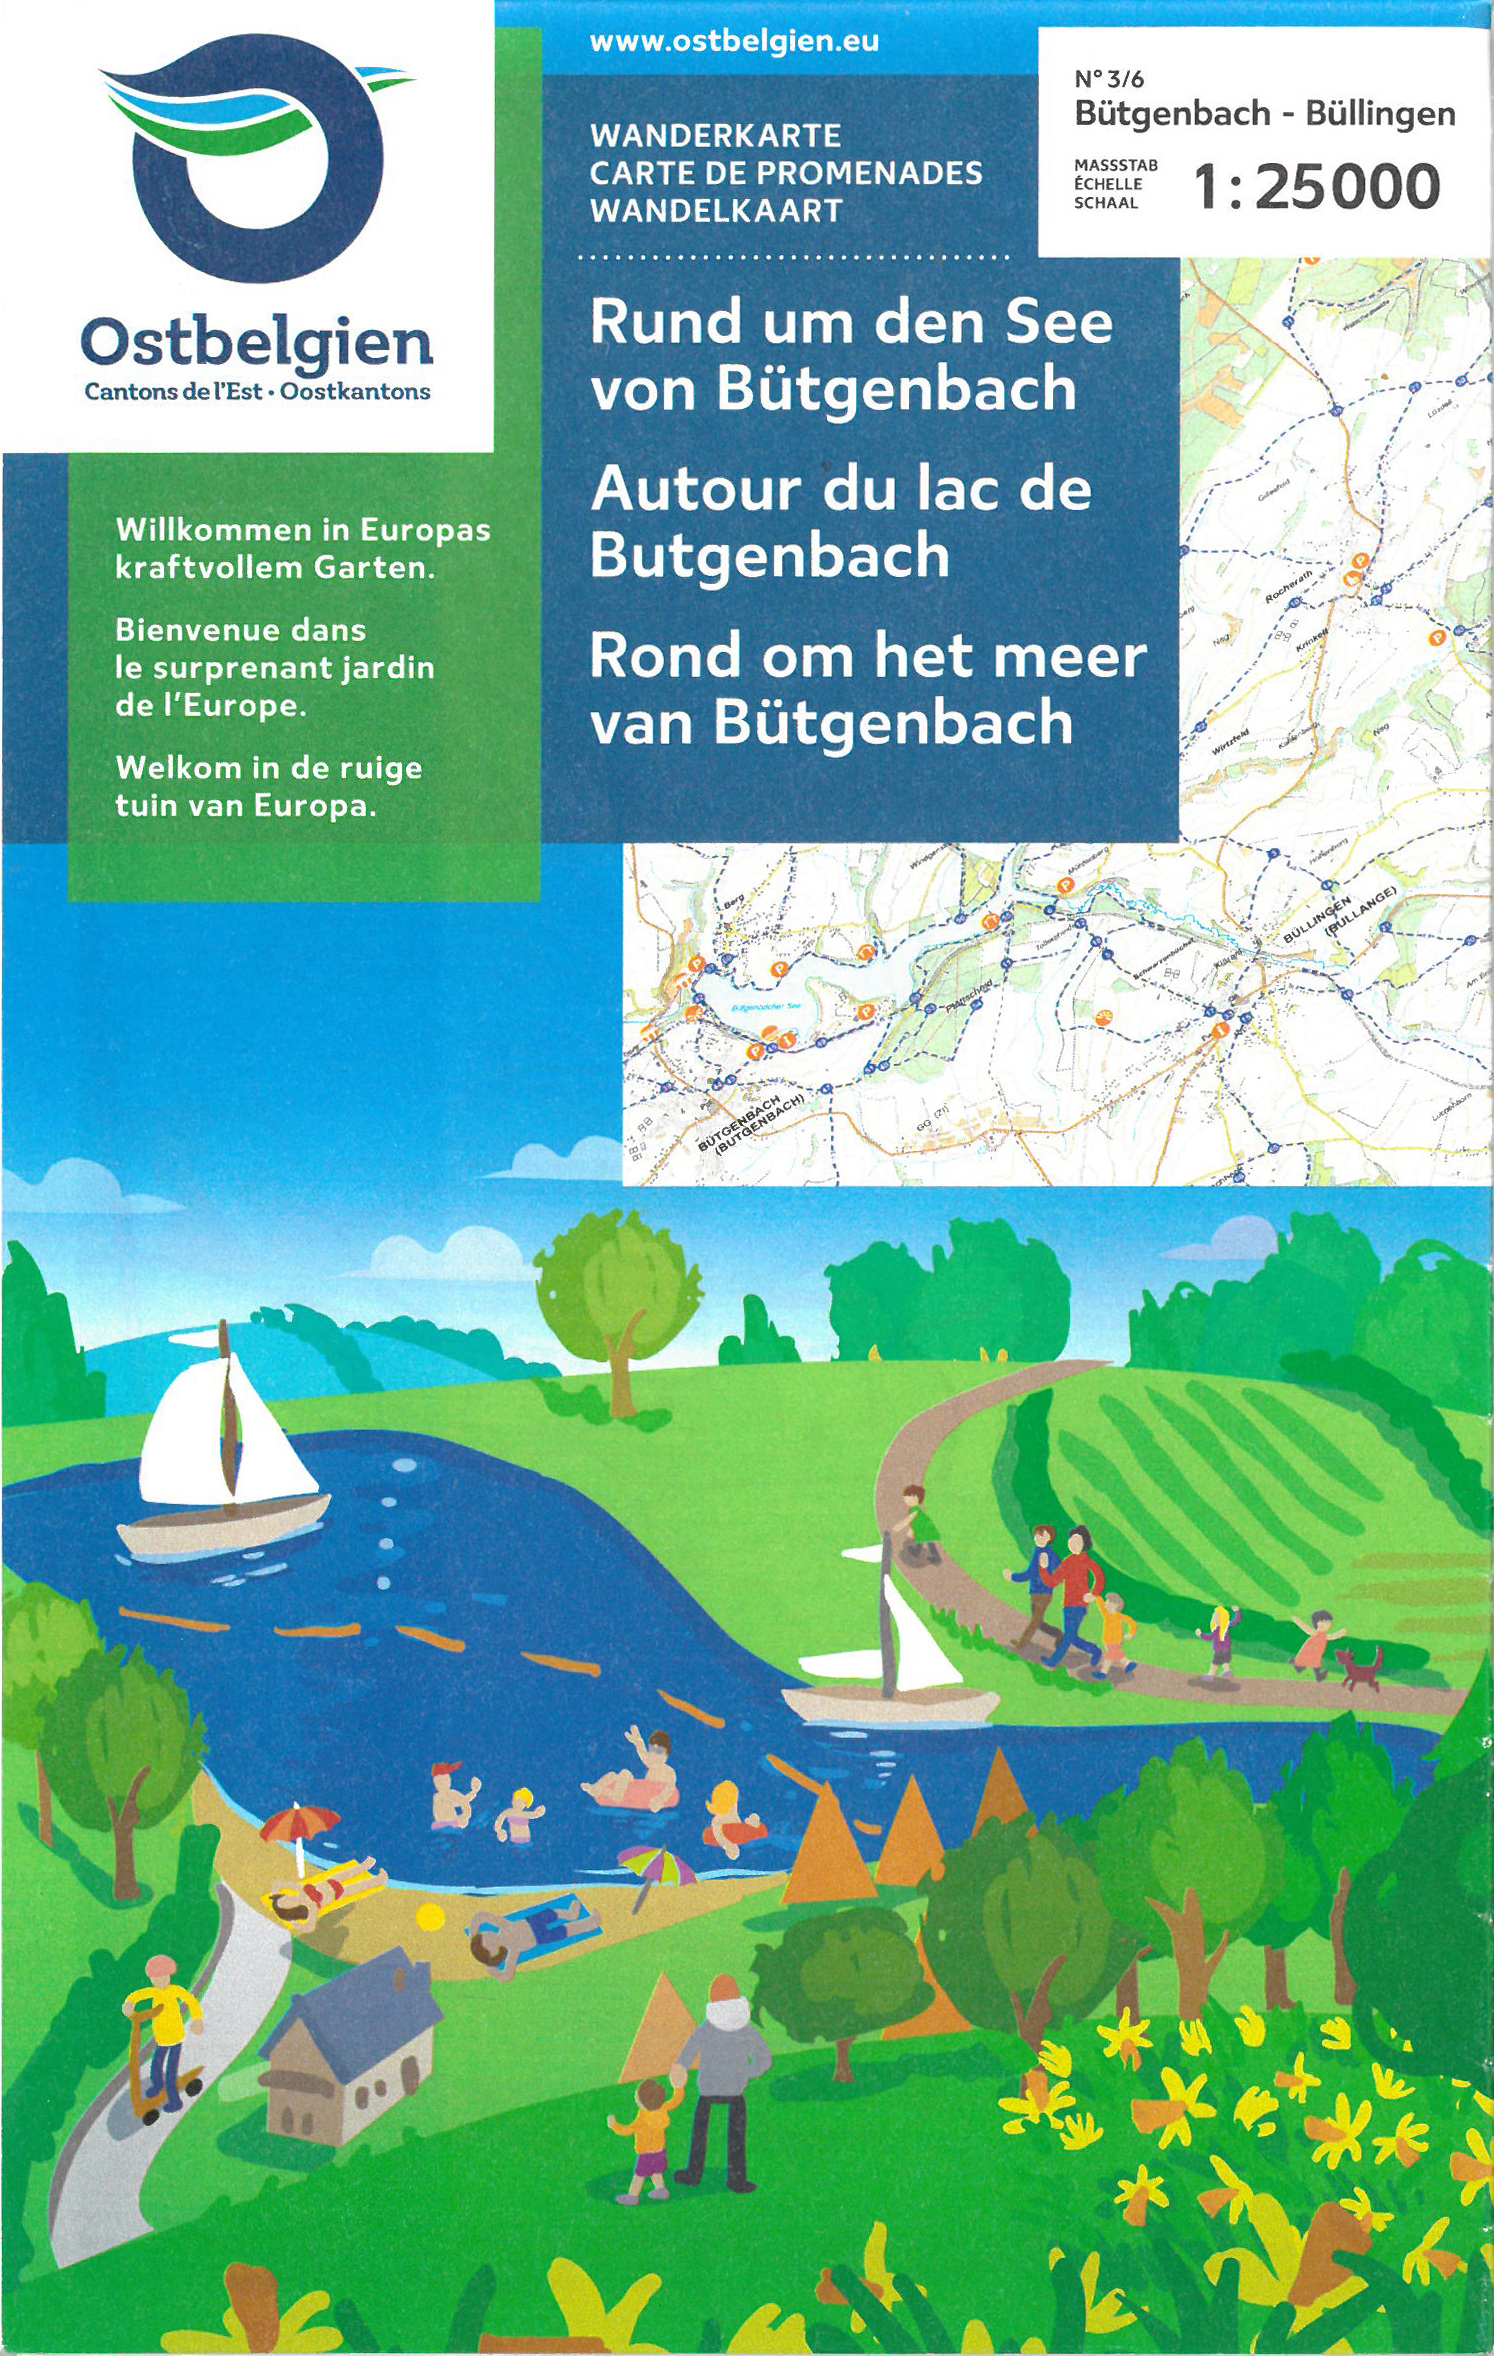 Online bestellen: Wandelkaart 83 Rond om het meer van Bütgenbach - Hoge Venen met wandelknooppunten | NGI - Nationaal Geografisch Instituut